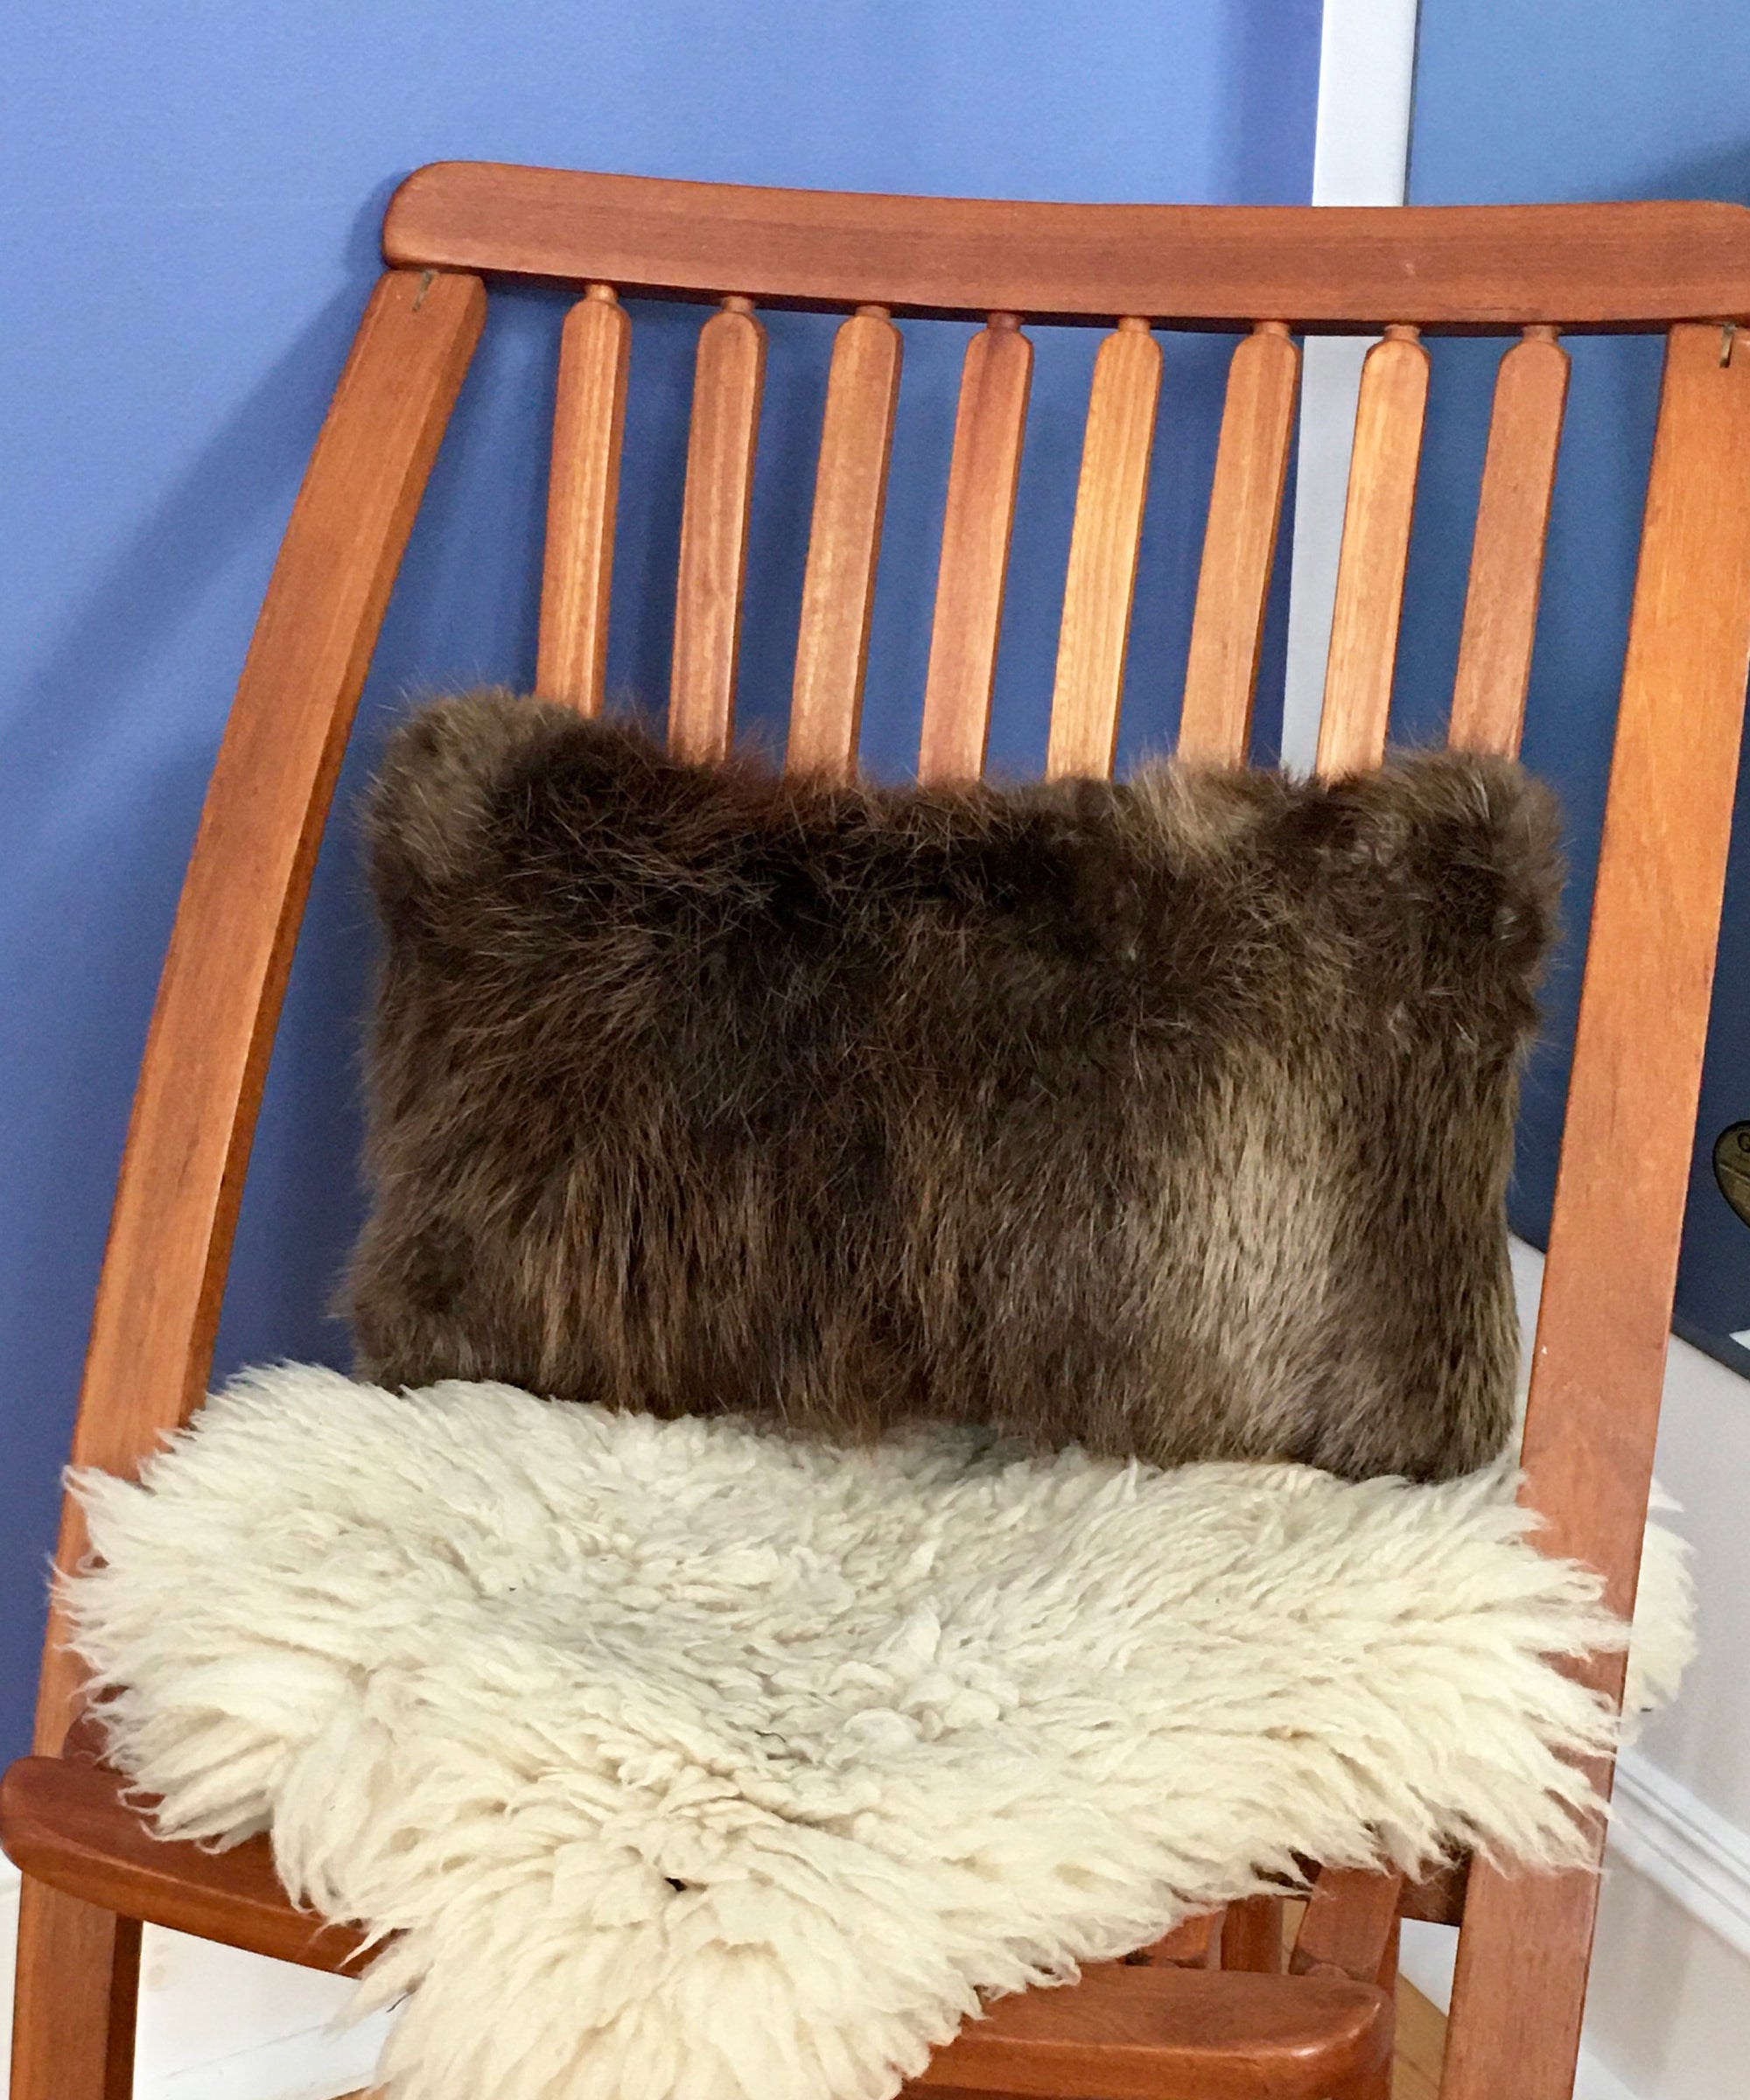 Beaver Fur Accent Pillows, 11" x 17"